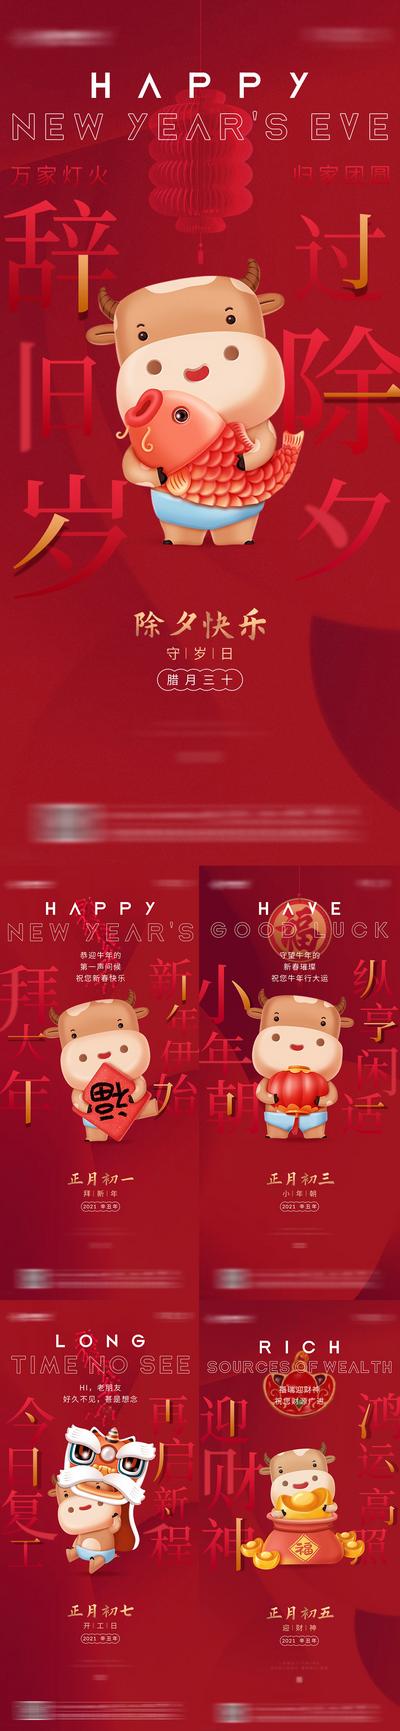 南门网 海报 中国传统节日 房地产 春节 新年 过年 除夕 初一 初三 初五 初七 卡通牛 喜庆